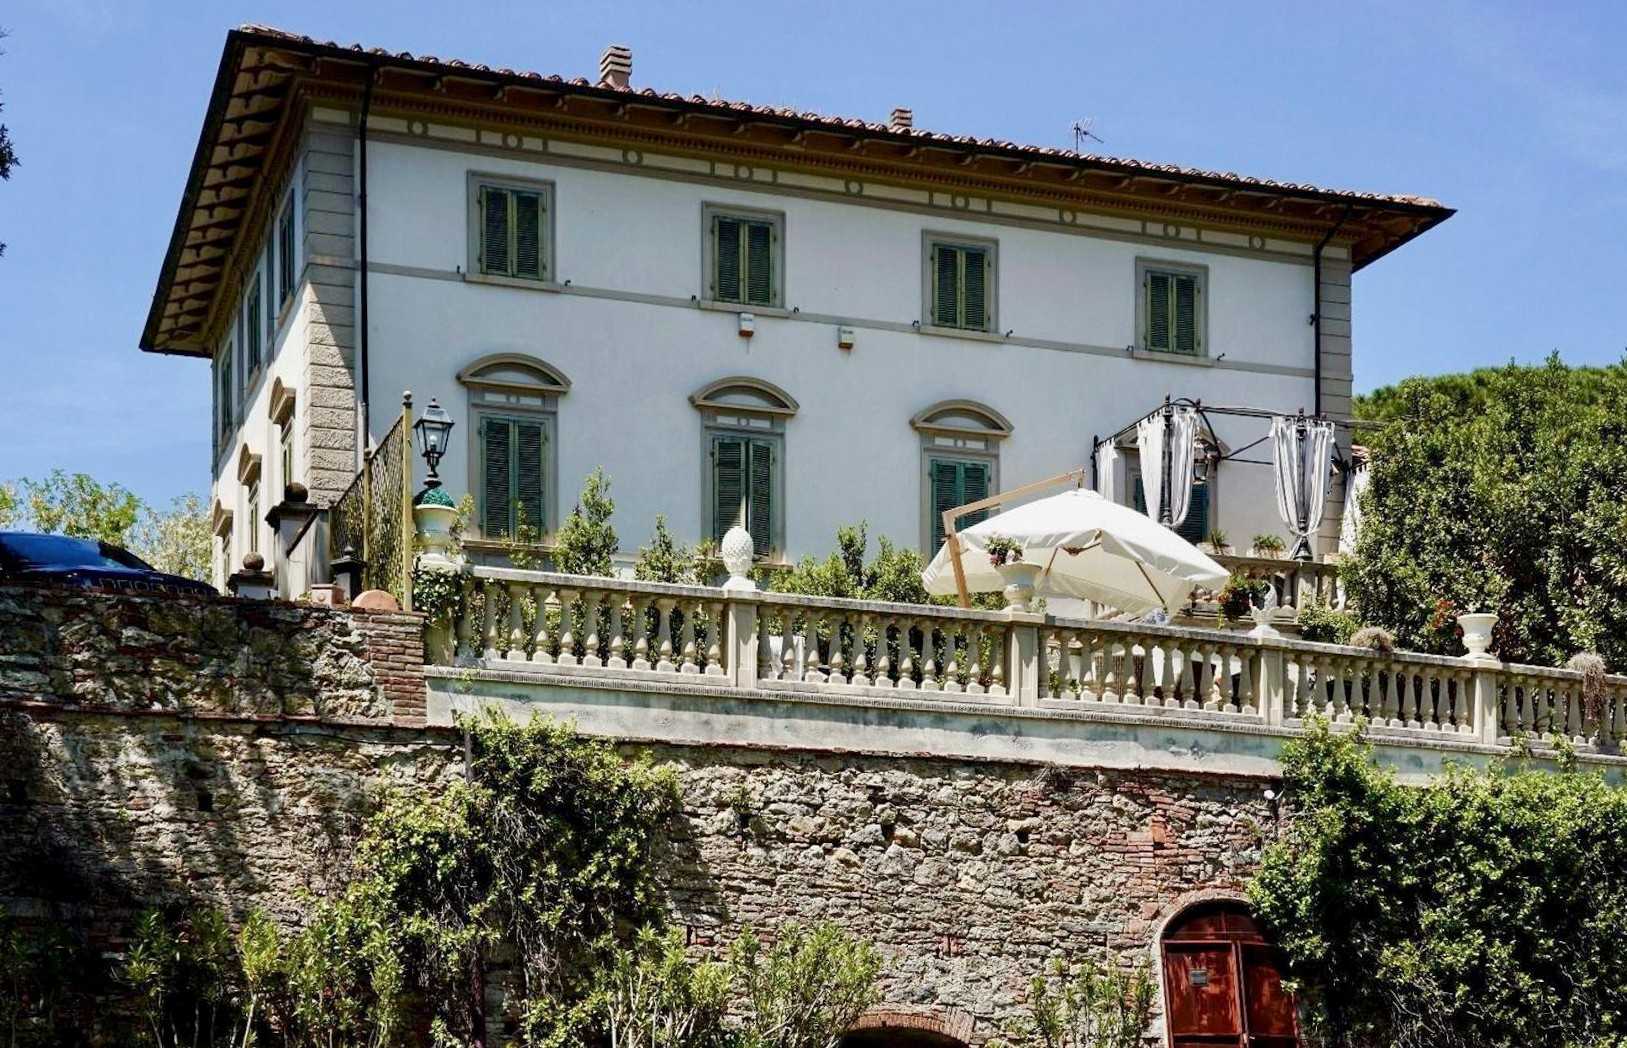 Fotos Dos exclusivas unidades residenciales en una villa histórica cerca de Pisa